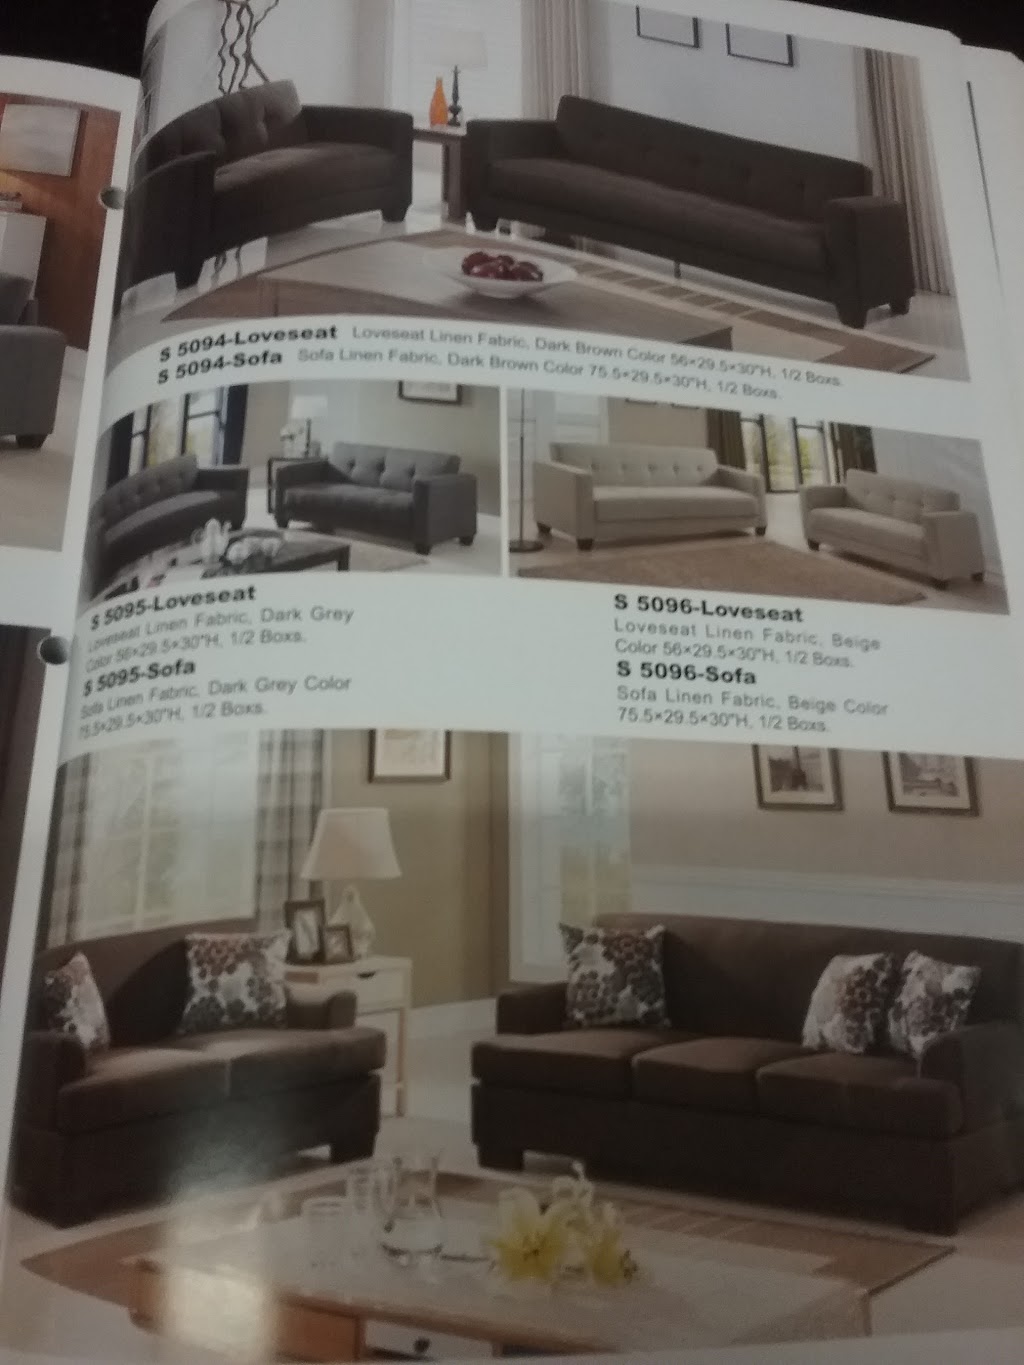 Country Oak Furniture | 17439 Bellflower Blvd, Bellflower, CA 90706, USA | Phone: (562) 866-8400